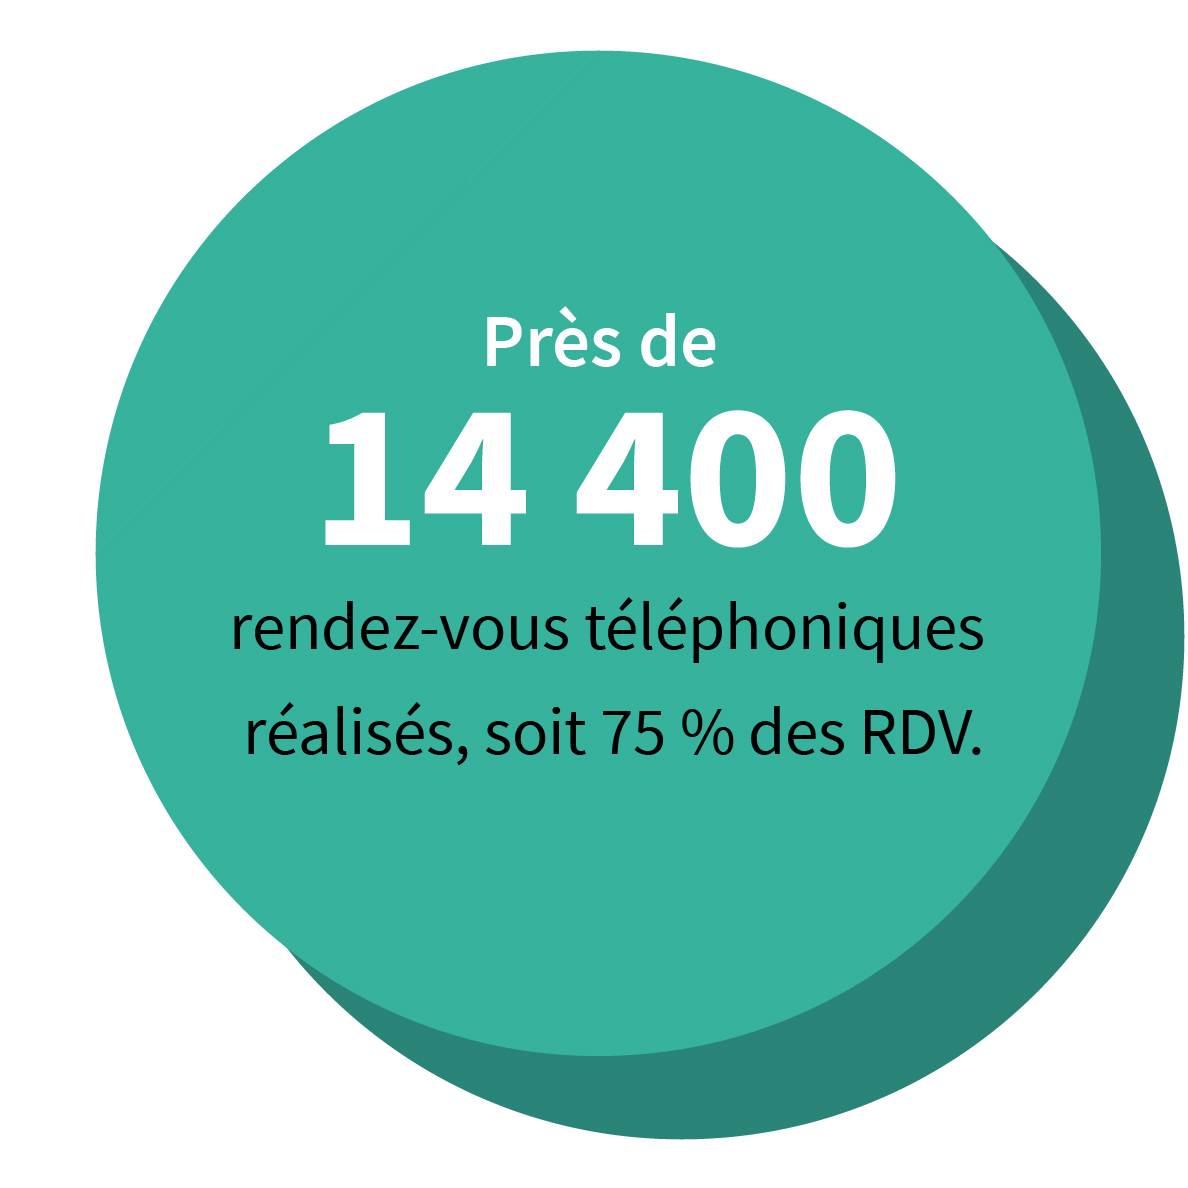 Près de 14 400 rendez-vous téléphoniques réalisés, soit 75 % des RDV.